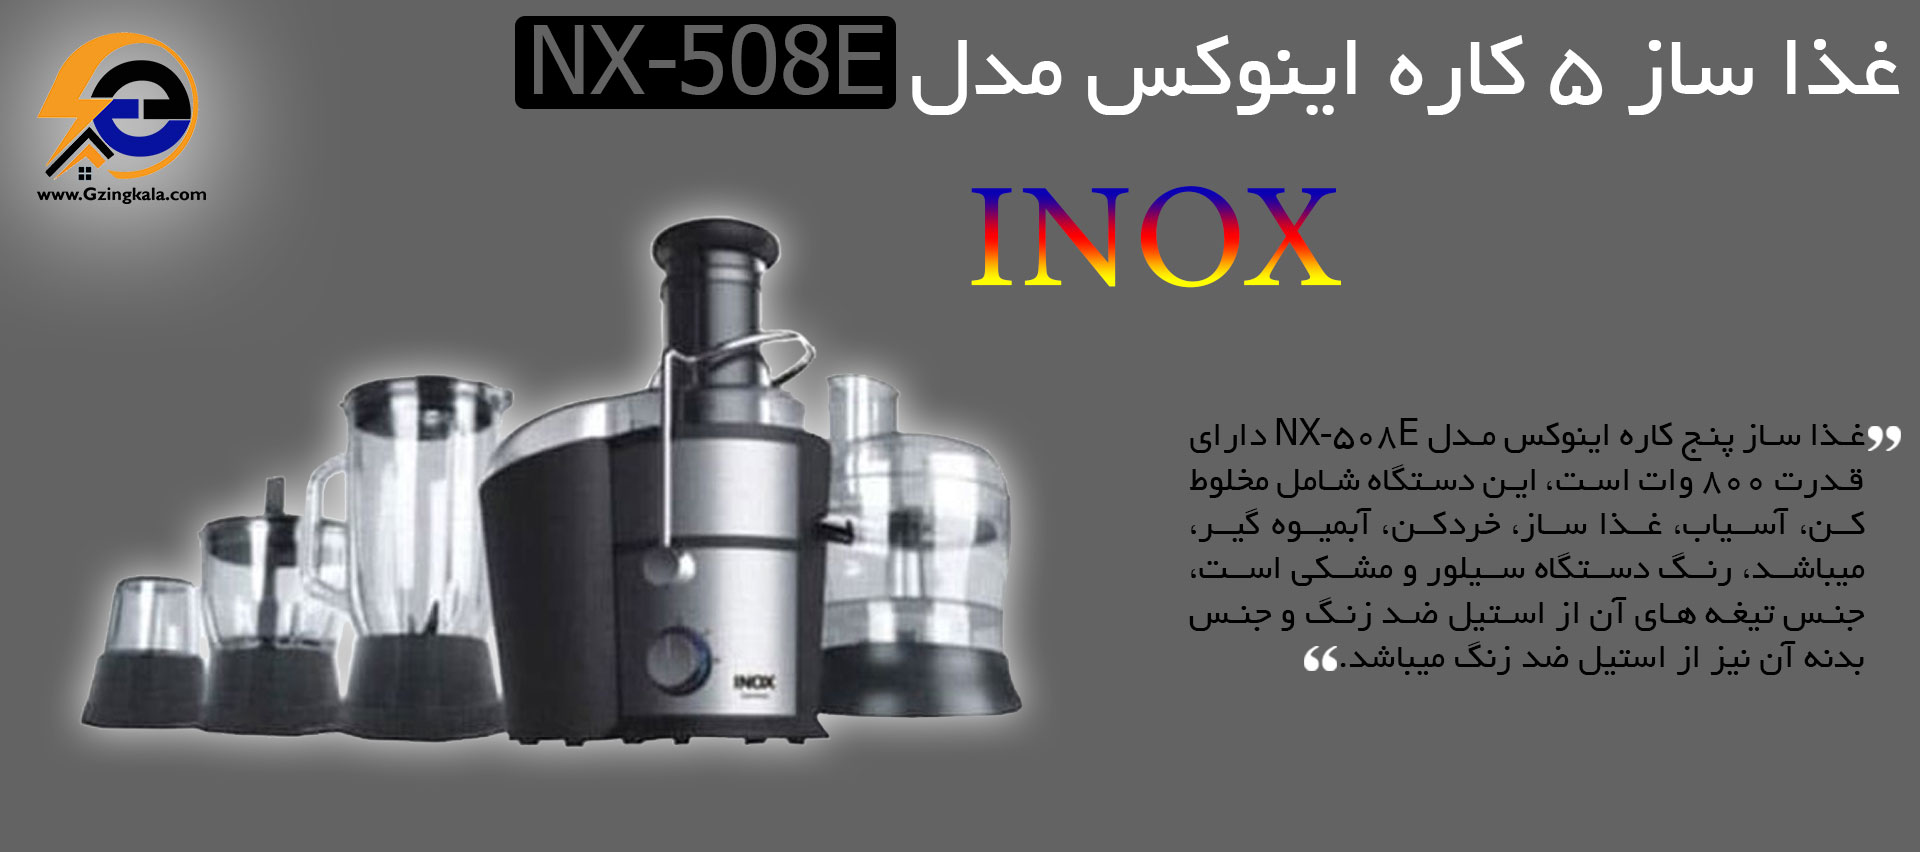 غذا ساز 5 کاره اینوکس مدل NX_508E